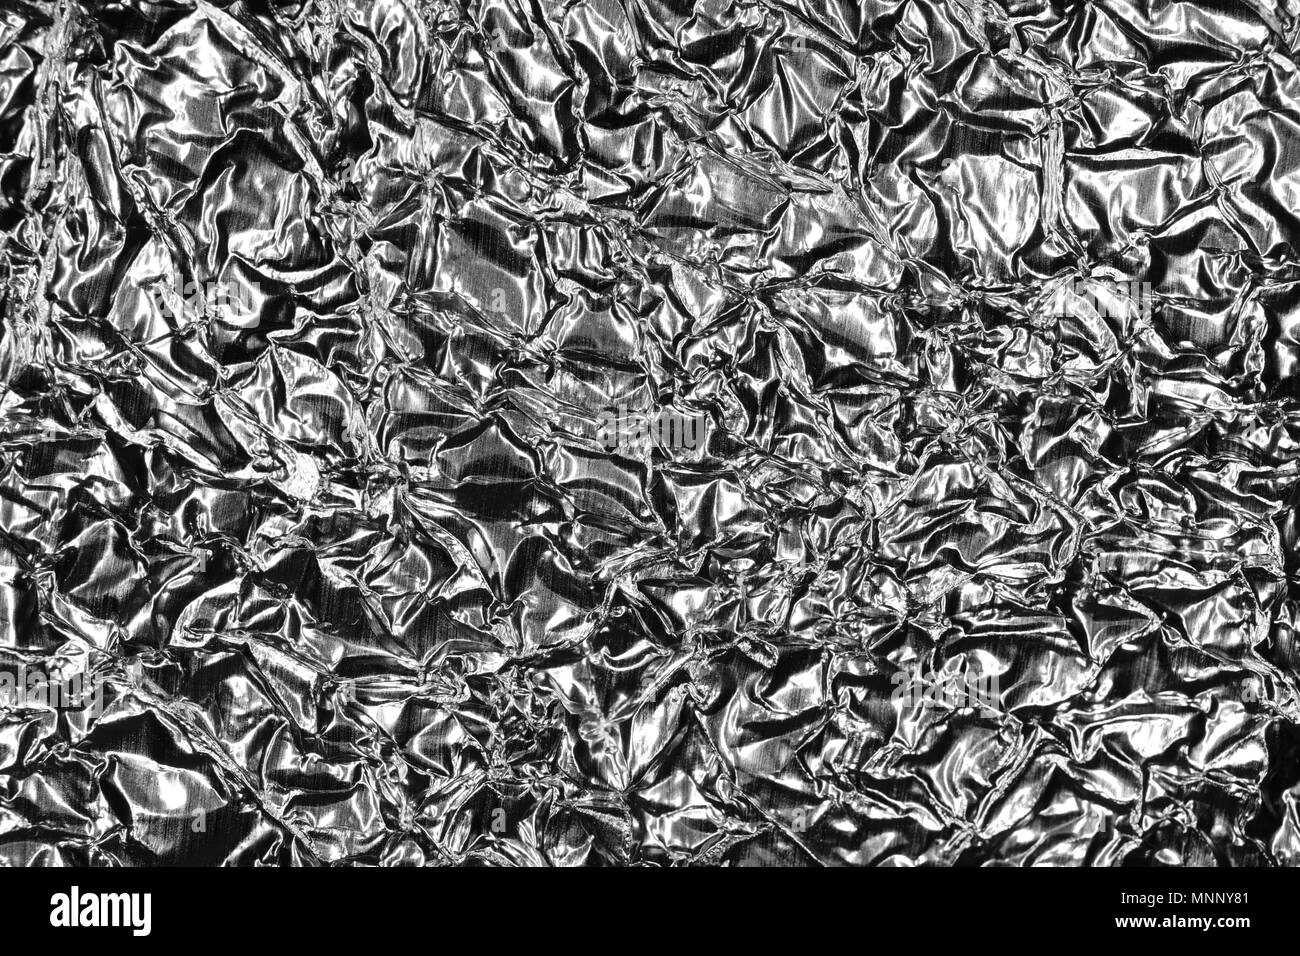 Monochrome Metallic Crumpled Foil Texture. Black & White Background. Stock Photo